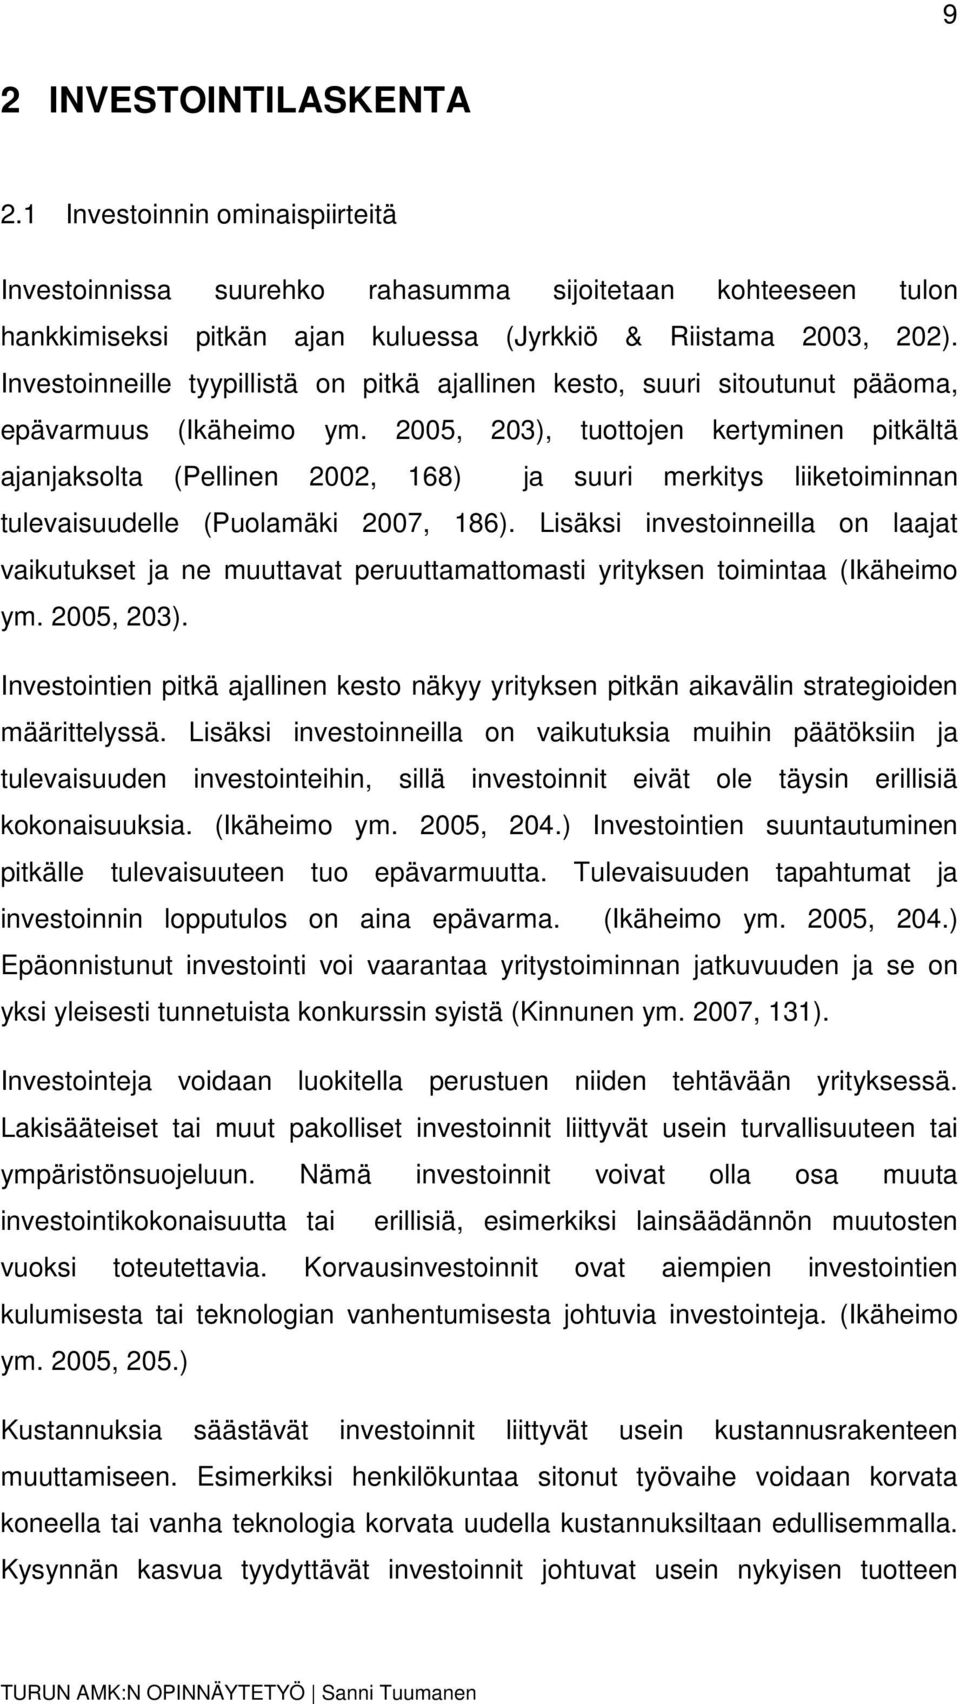 2005, 203), tuottojen kertyminen pitkältä ajanjaksolta (Pellinen 2002, 168) ja suuri merkitys liiketoiminnan tulevaisuudelle (Puolamäki 2007, 186).